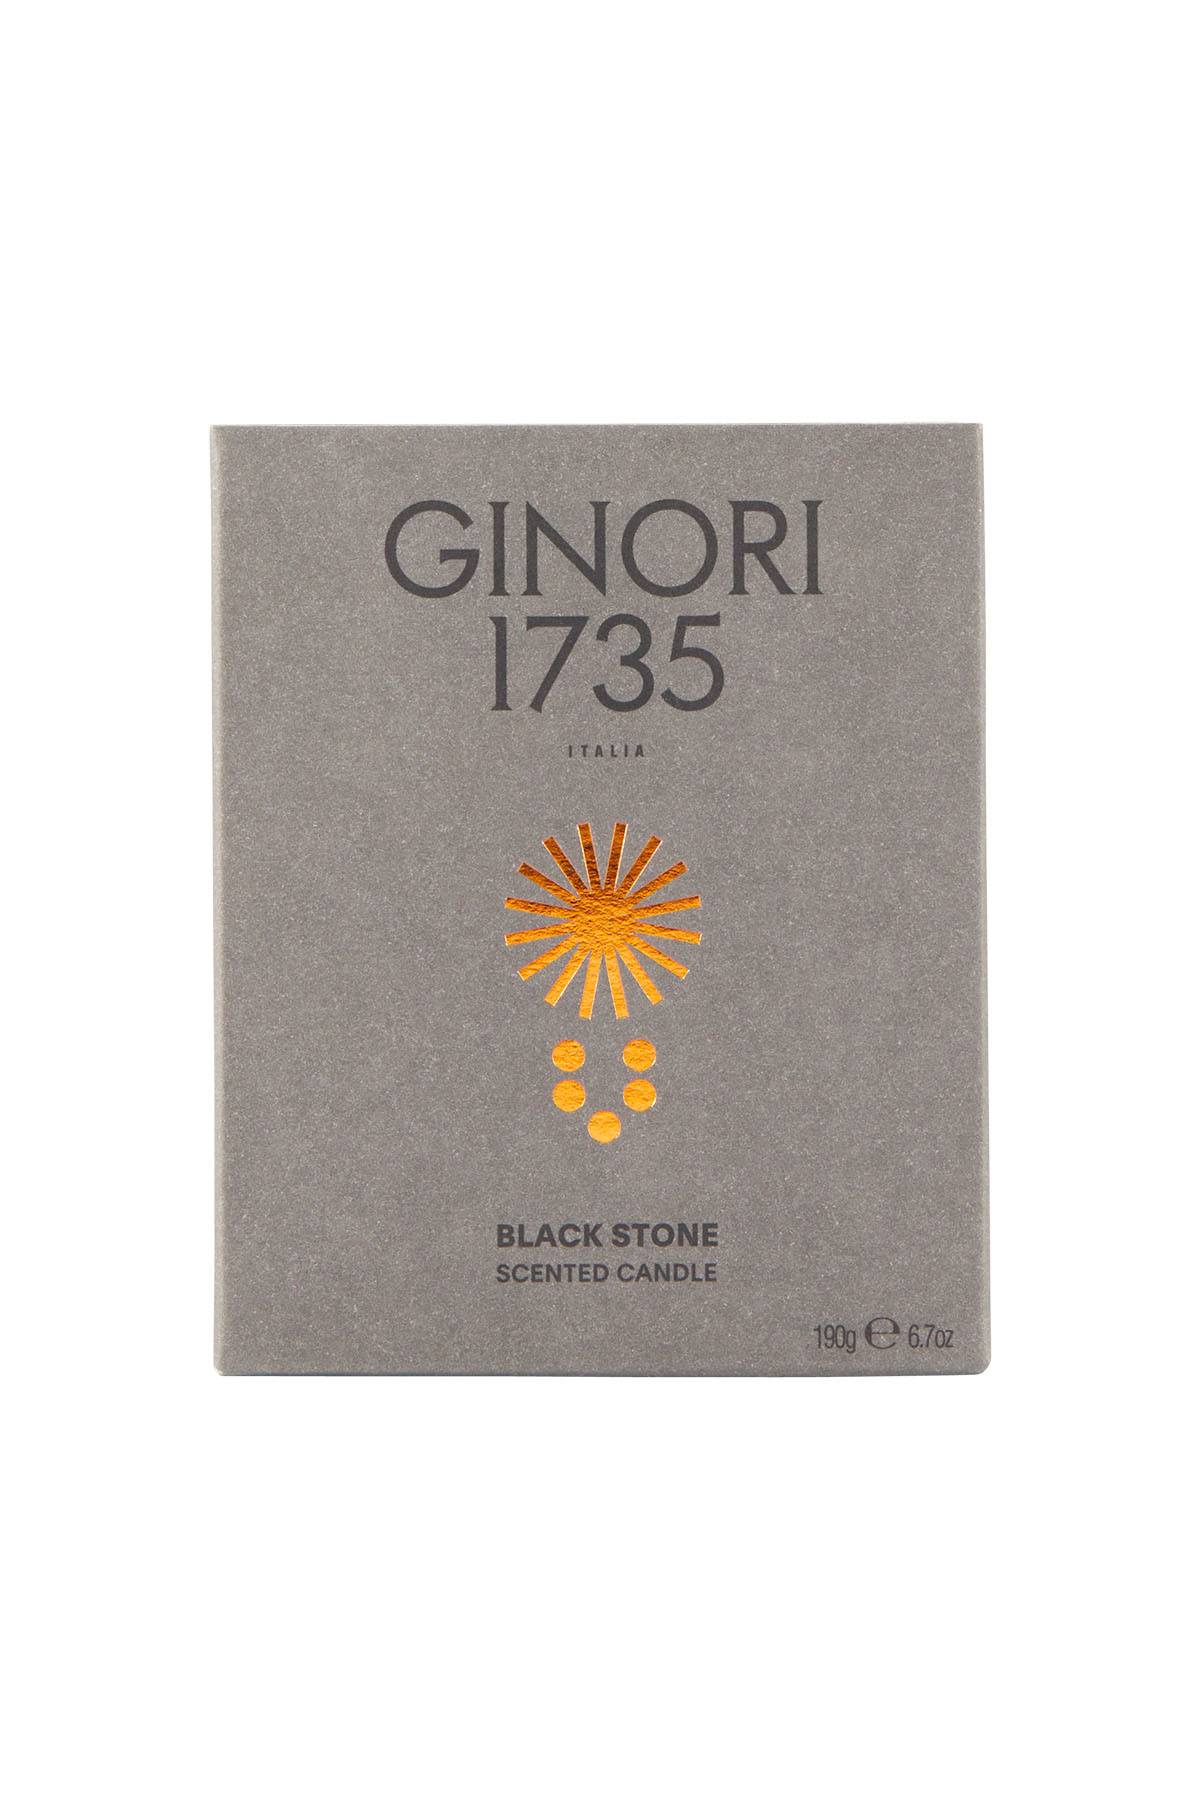 GINORI 1735 black stone scented candle refill for il seguace 190 gr